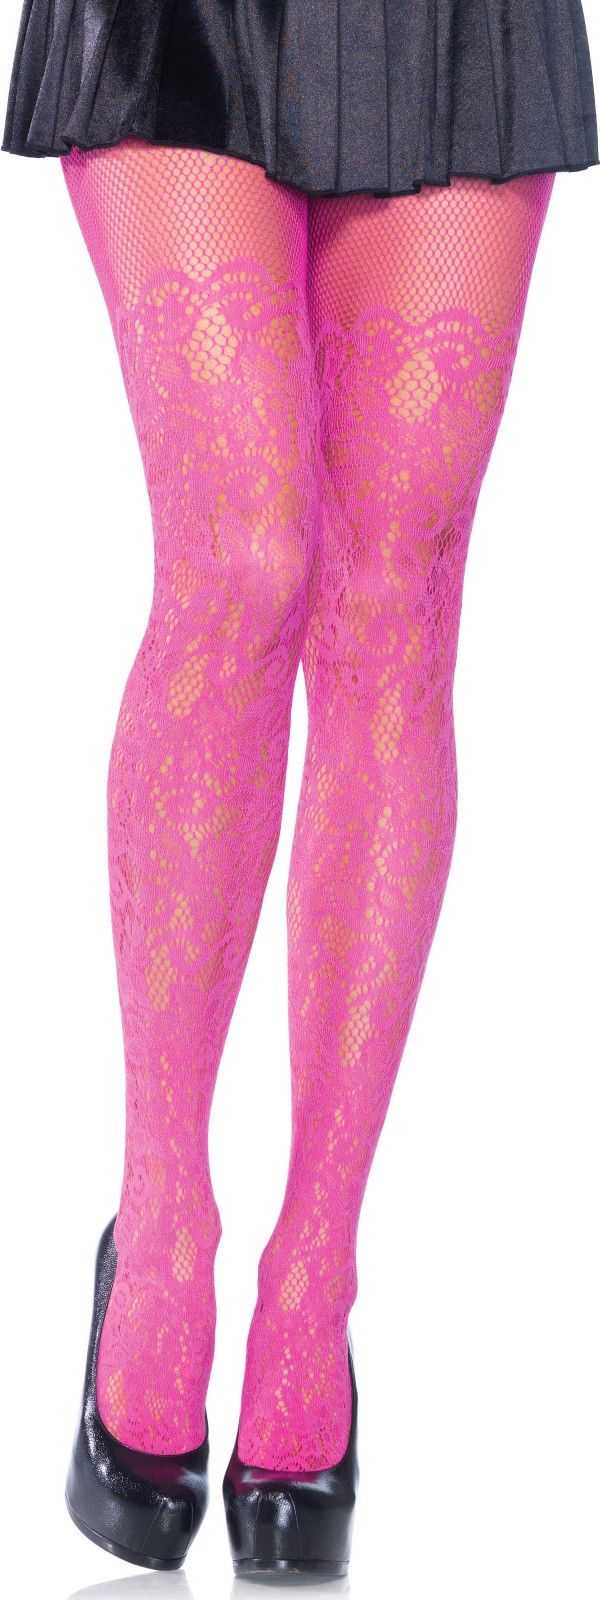 Panty met druivenrank motief roze